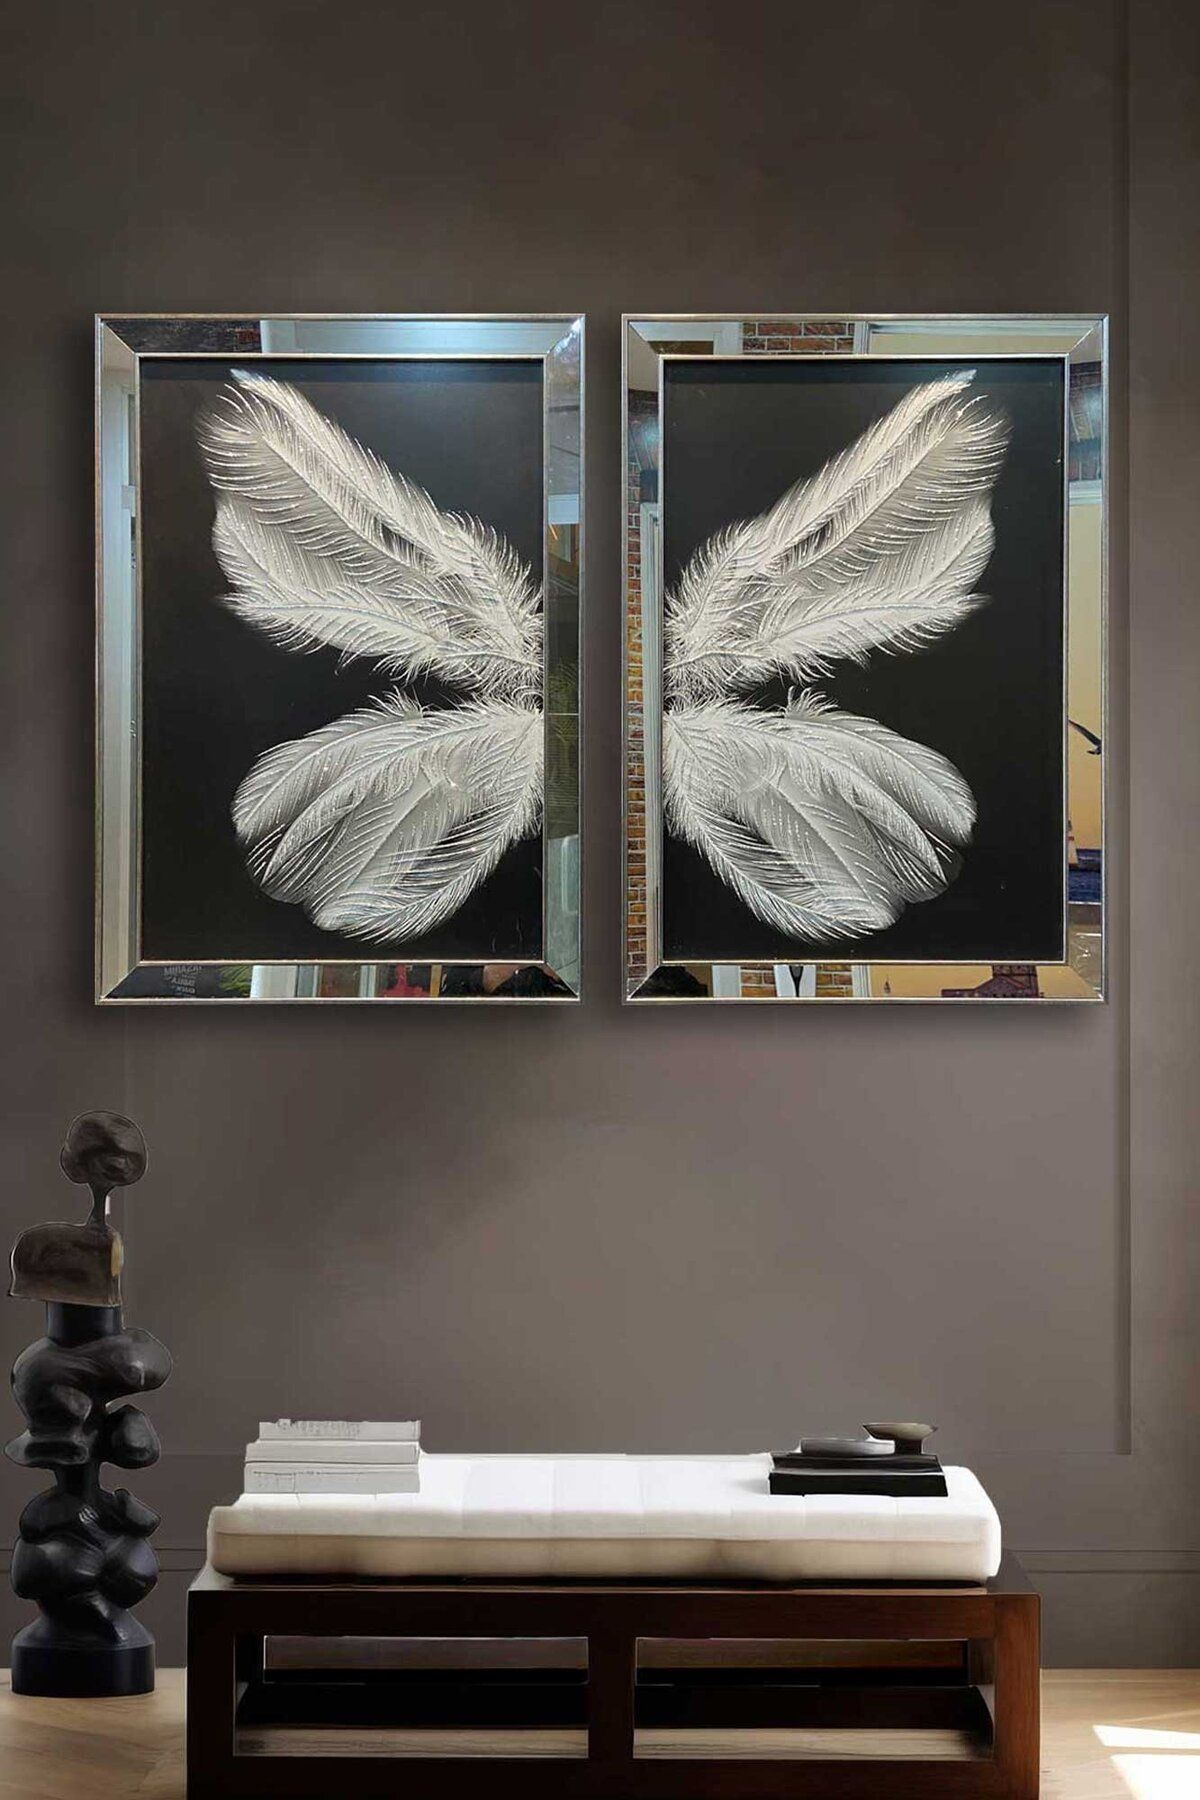 Voovart Çerçeveli Gümüş Aynalı Doku Kabartmalı Tüyler Kanvas Tablo 2'li SET ( 100x70cm ) - ART1083